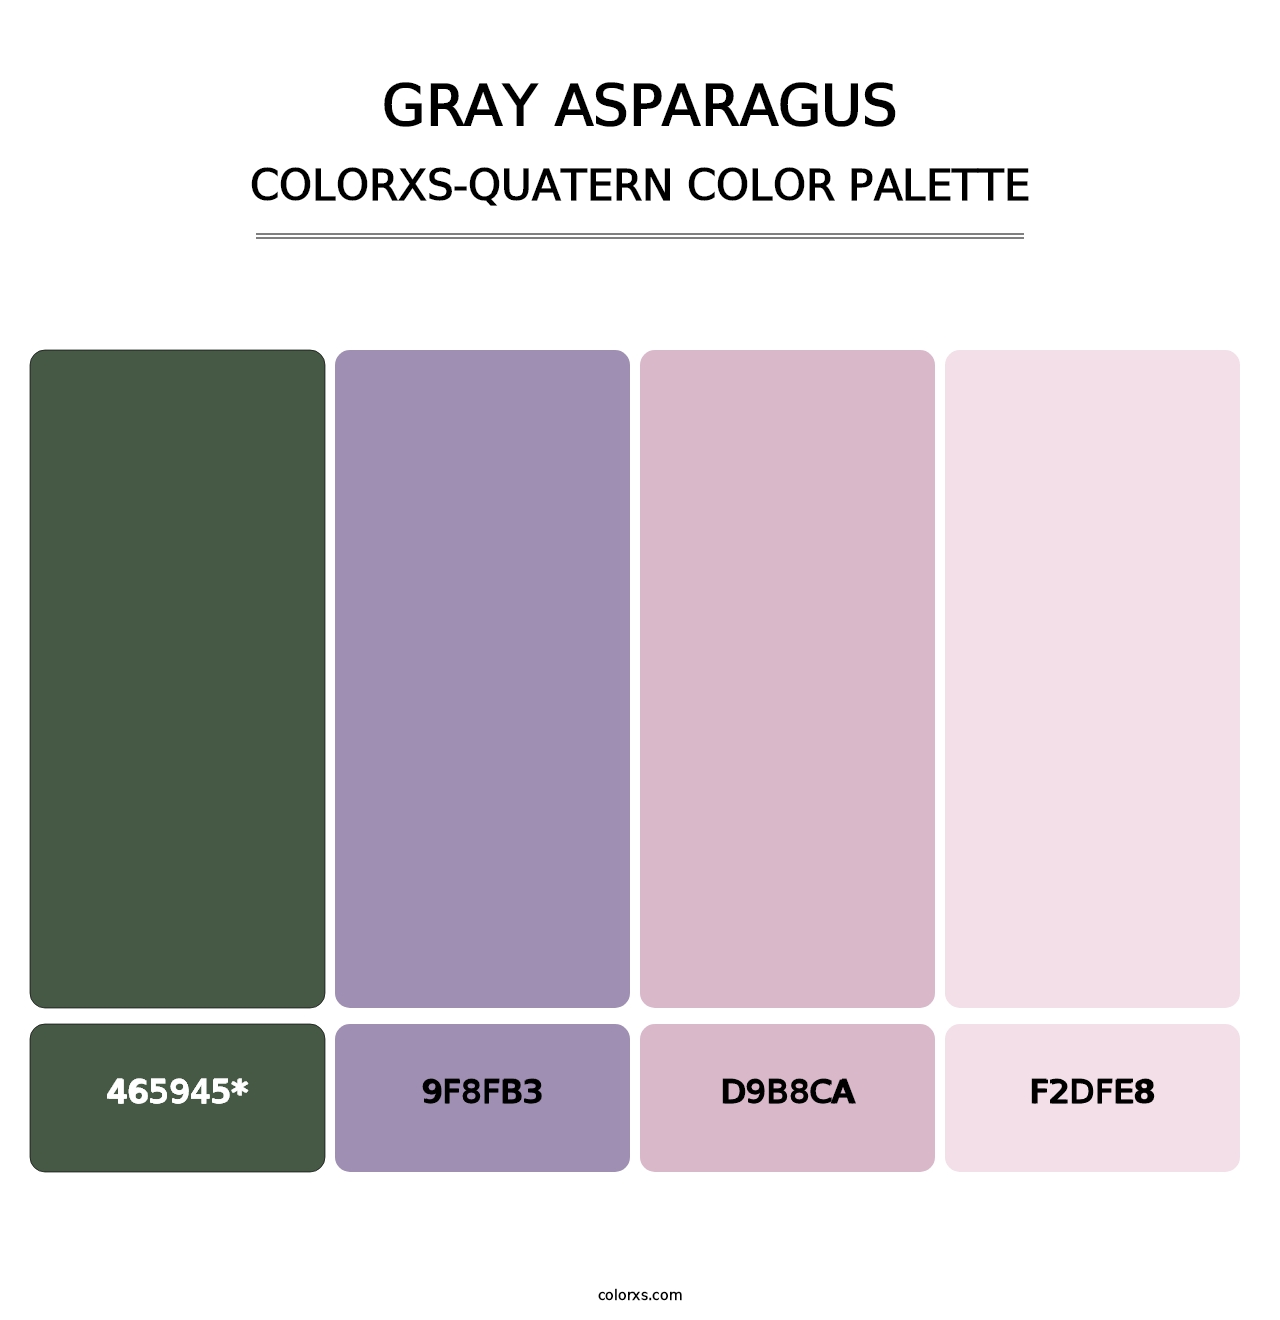 Gray Asparagus - Colorxs Quatern Palette